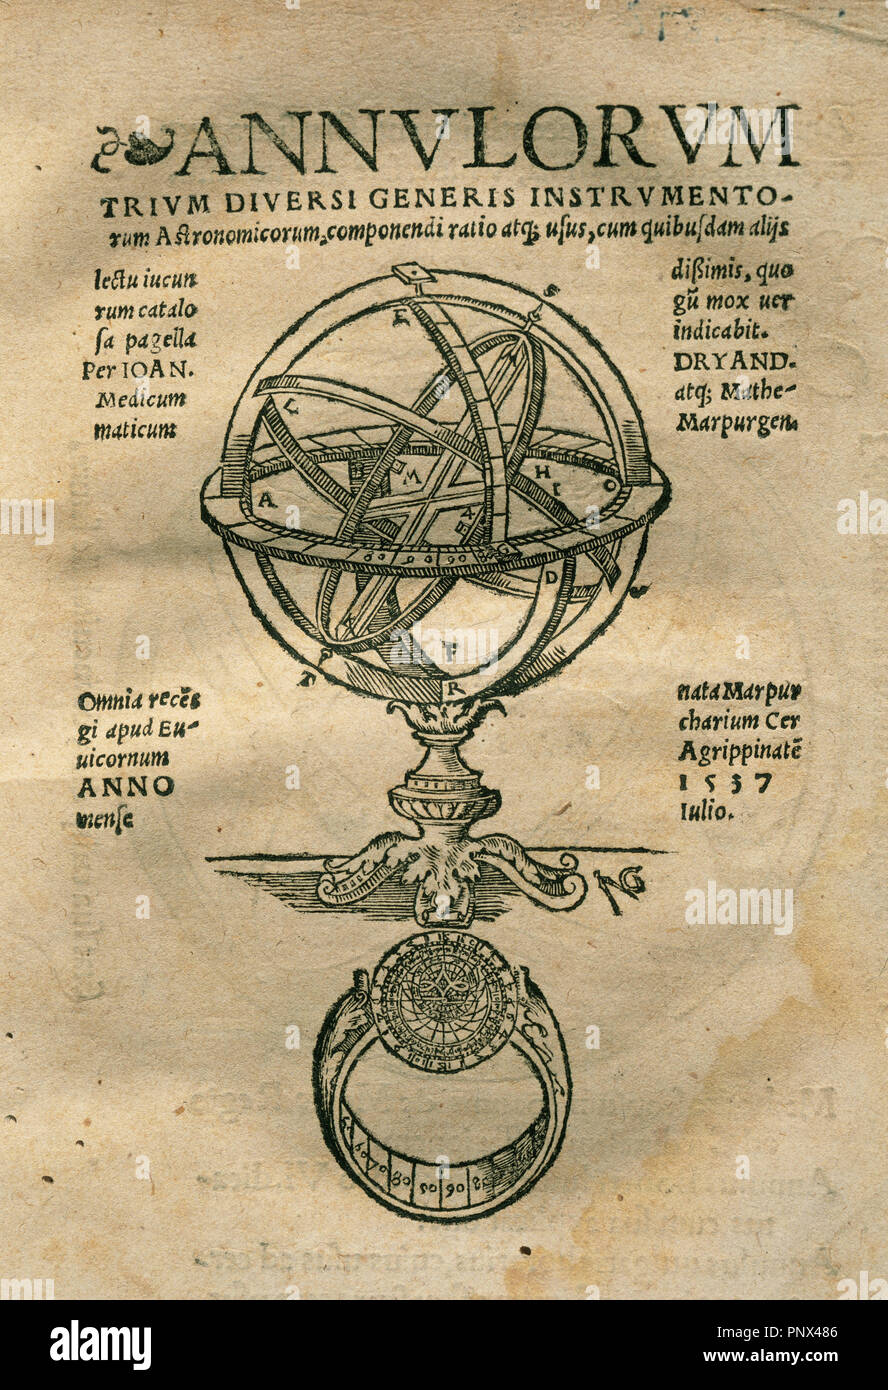 Johann Dryander (1500-1560). Anatomiste allemand et astronome. Annulorum. Titre concernent, 1537. Banque D'Images